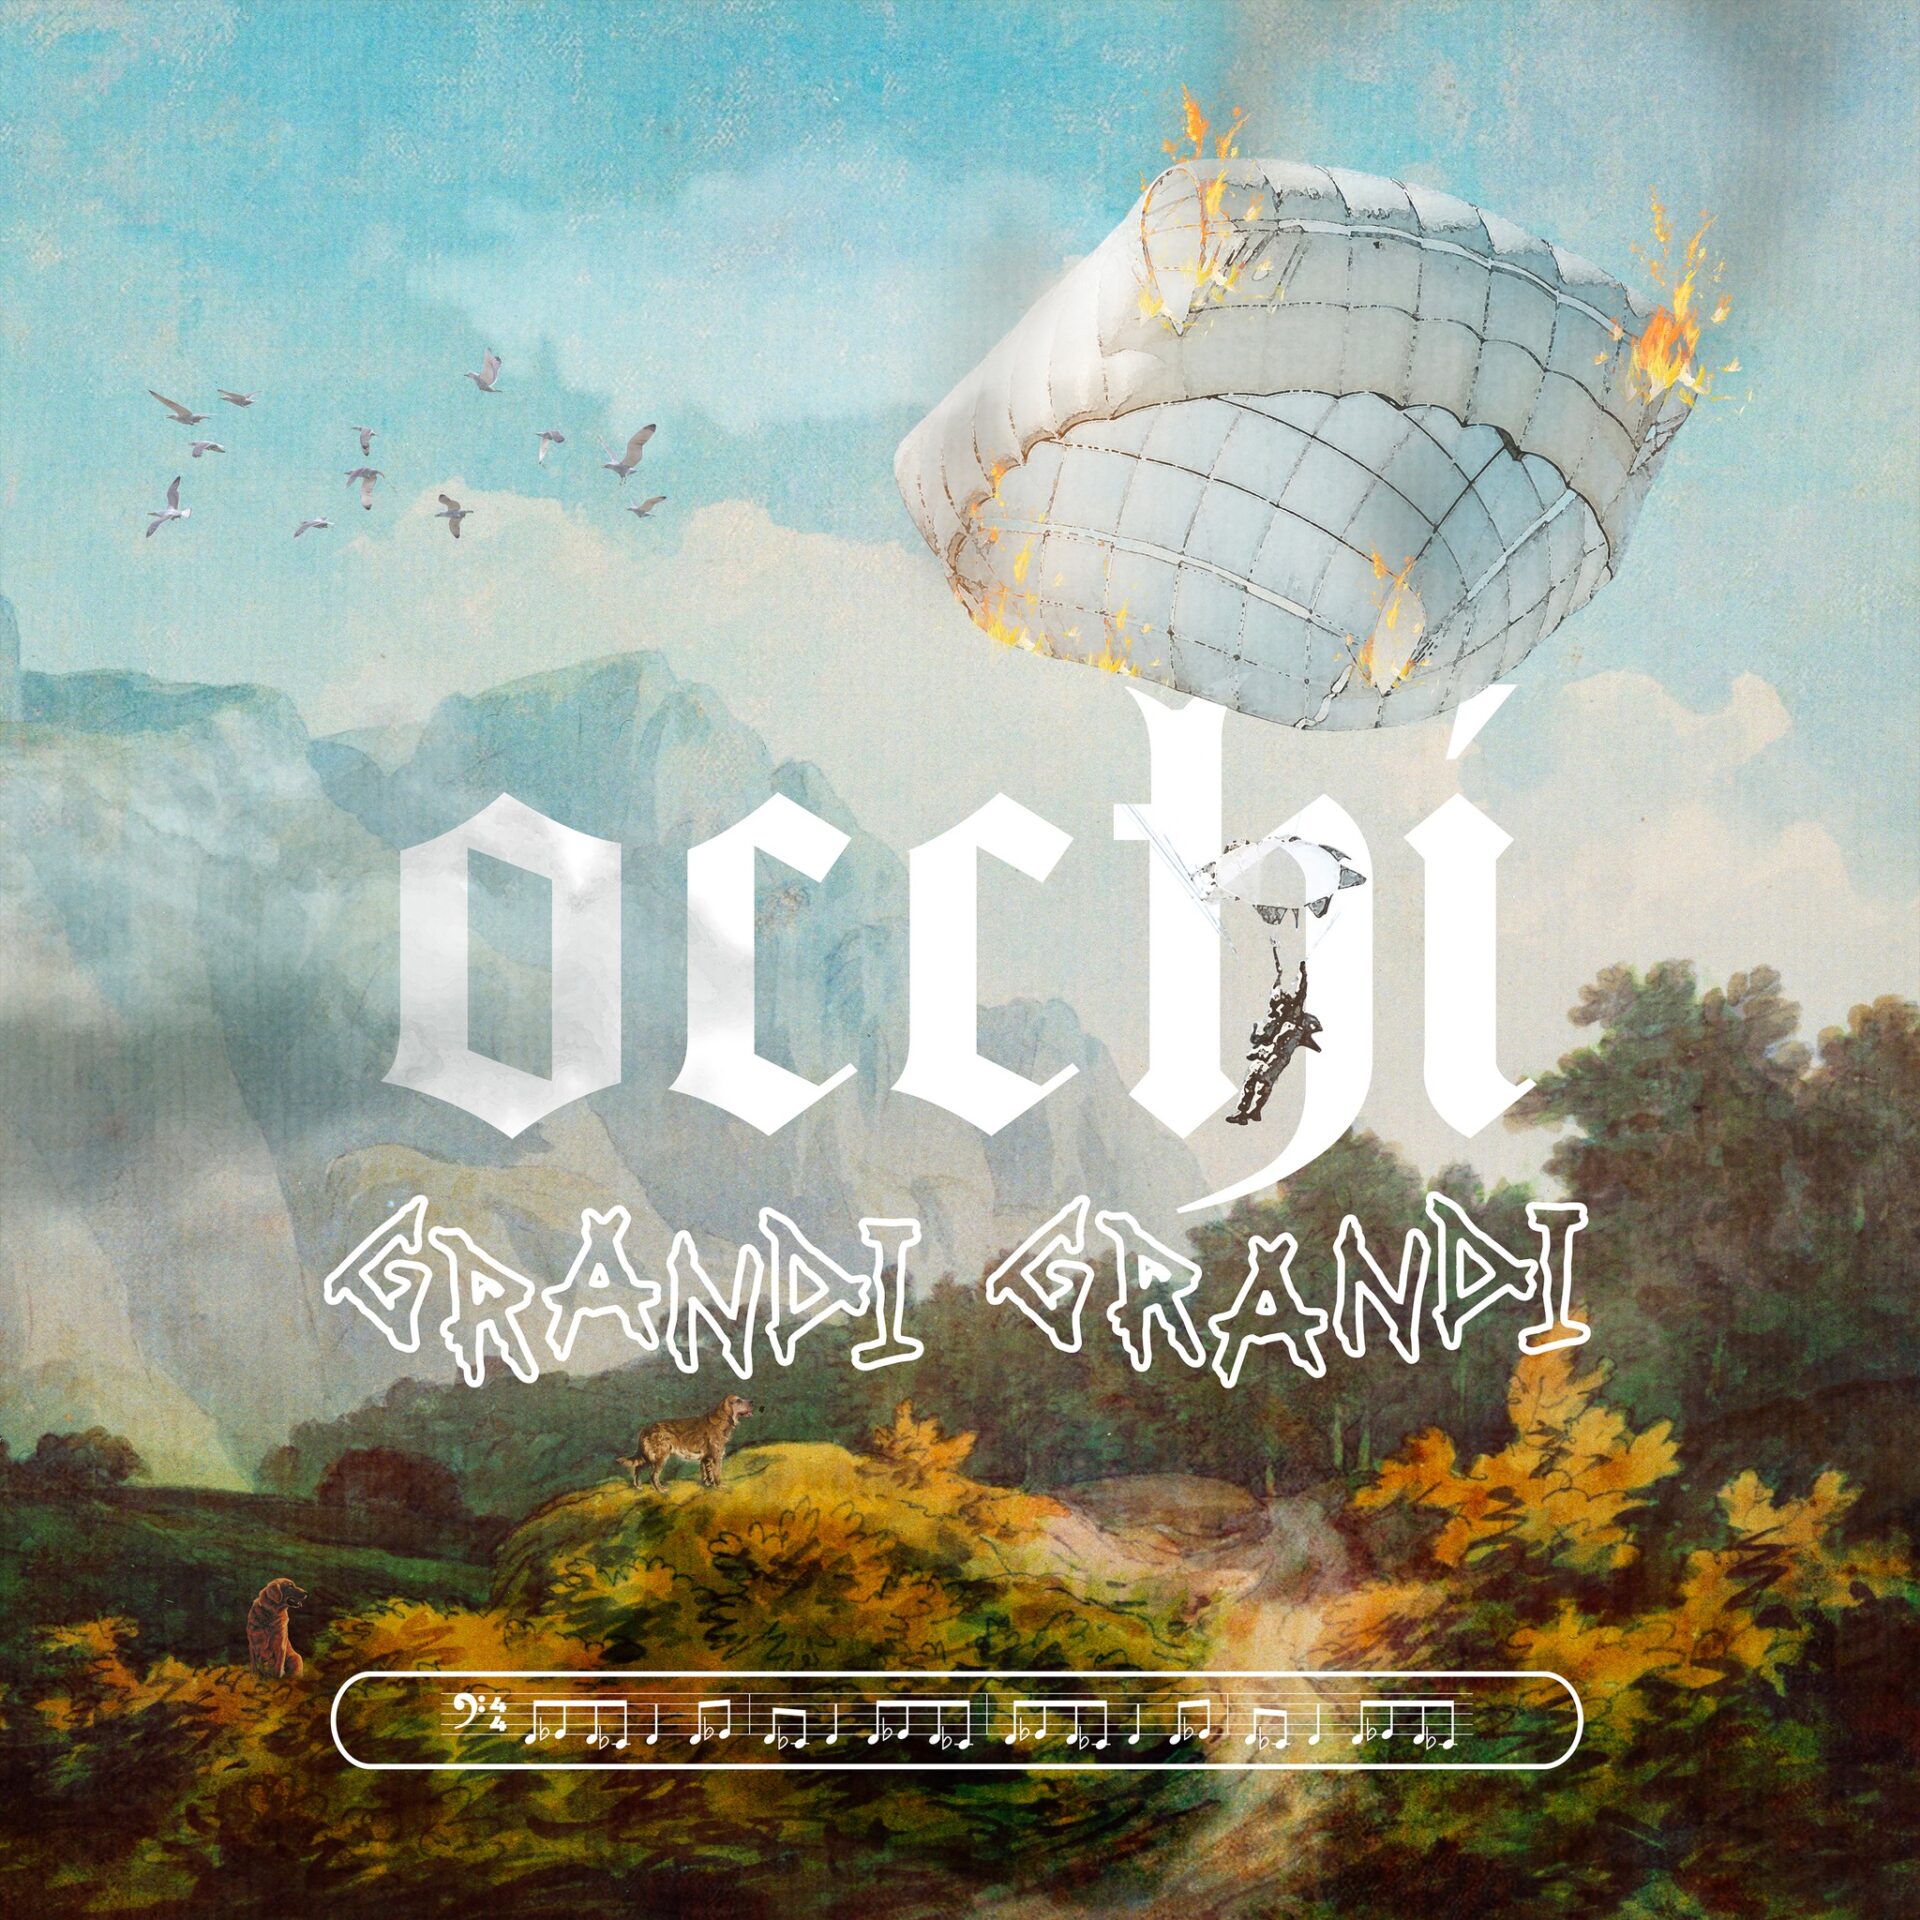 Nuovo singolo in uscita per Francesca Michielin, venerdì 9 settembre arriva "Occhi grandi grandi"